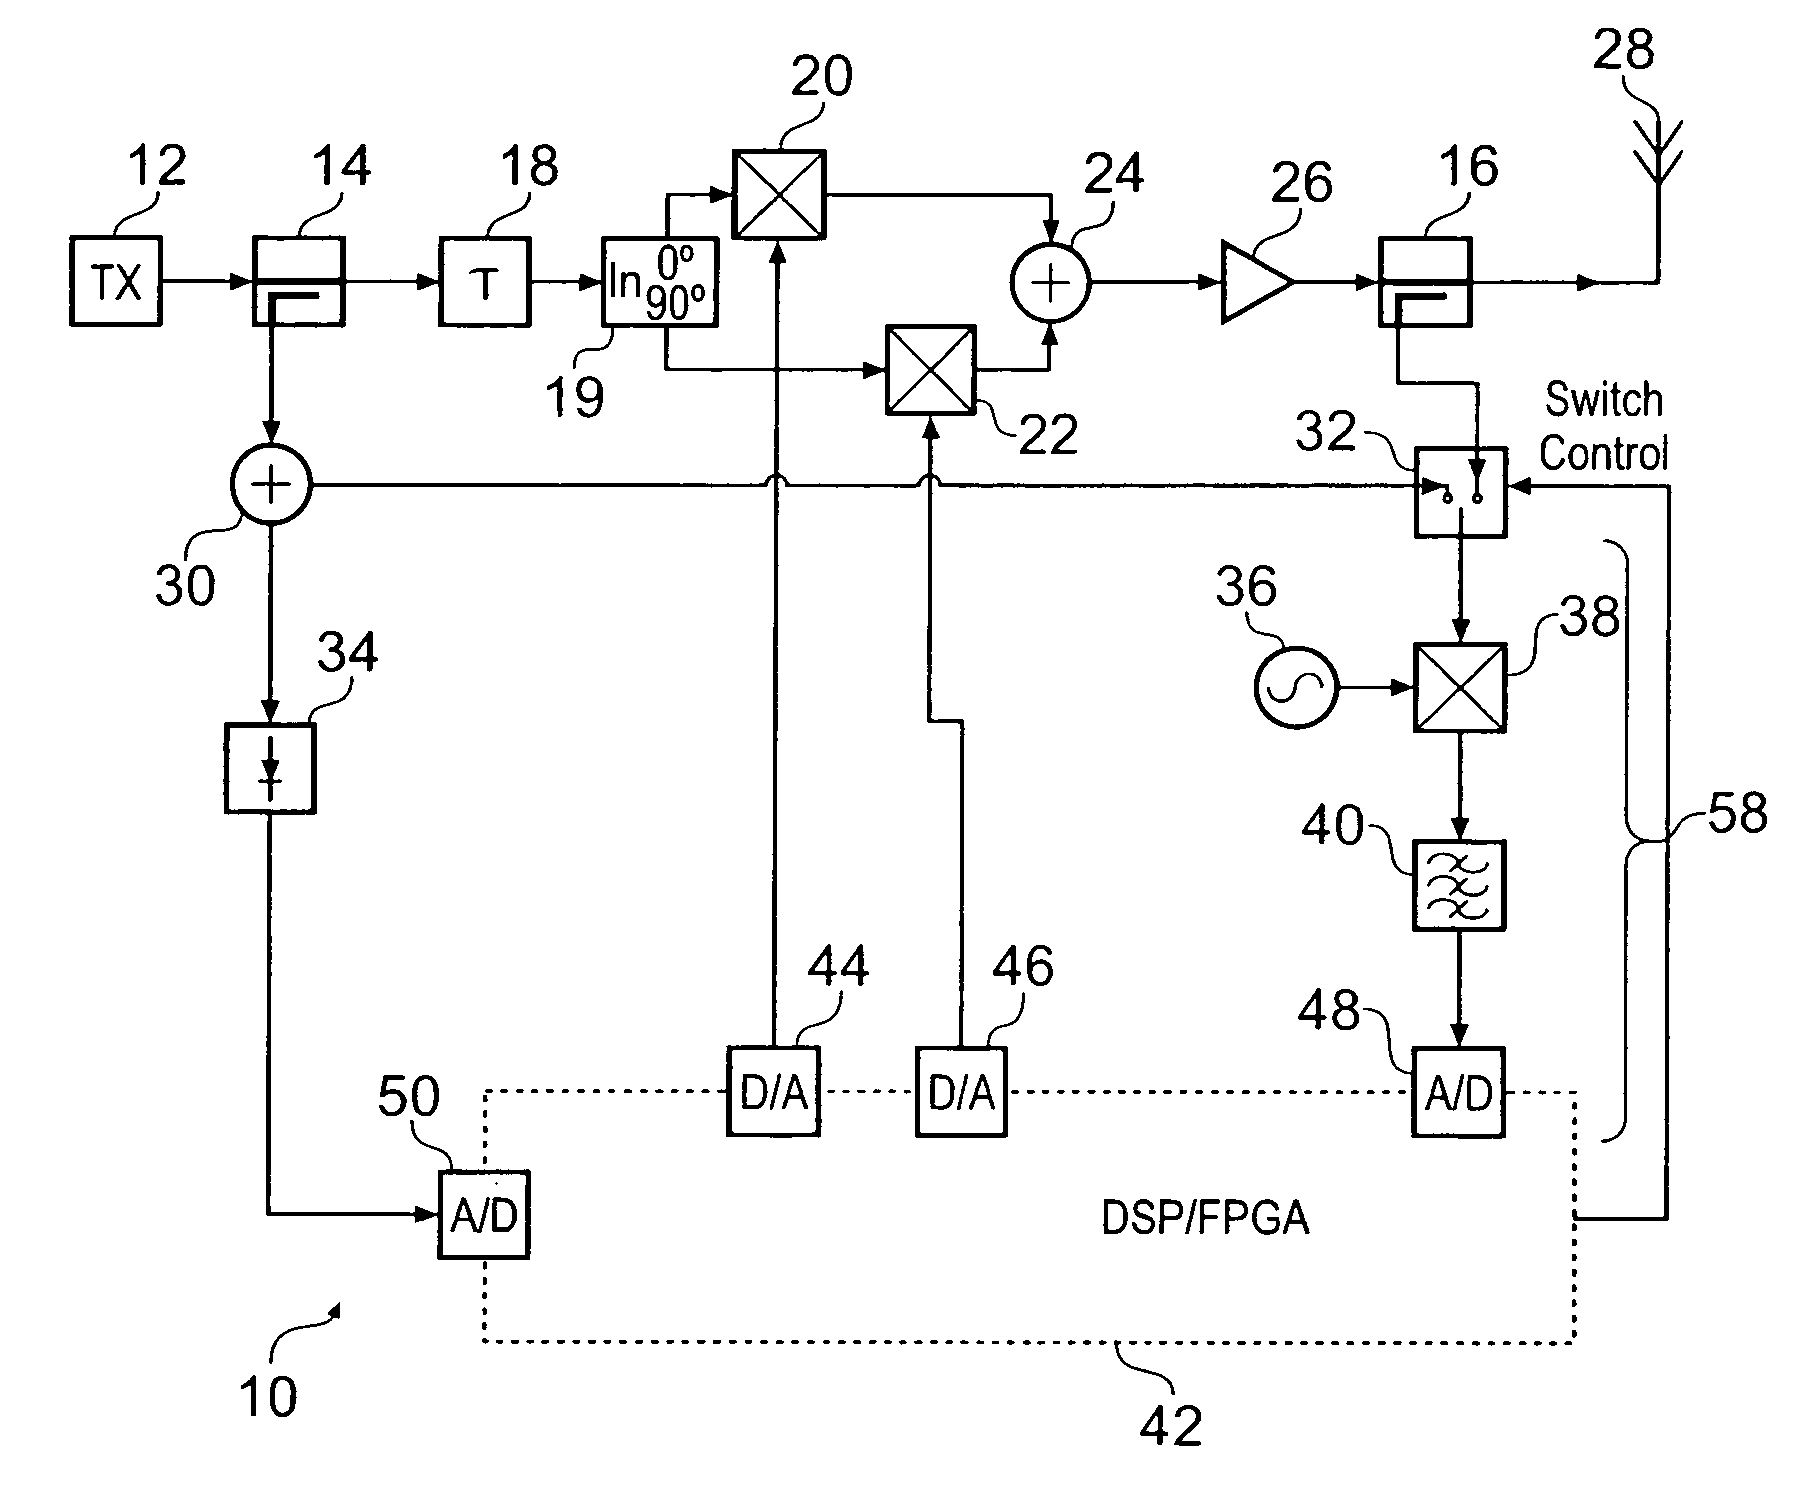 Signal sample acquisition techniques